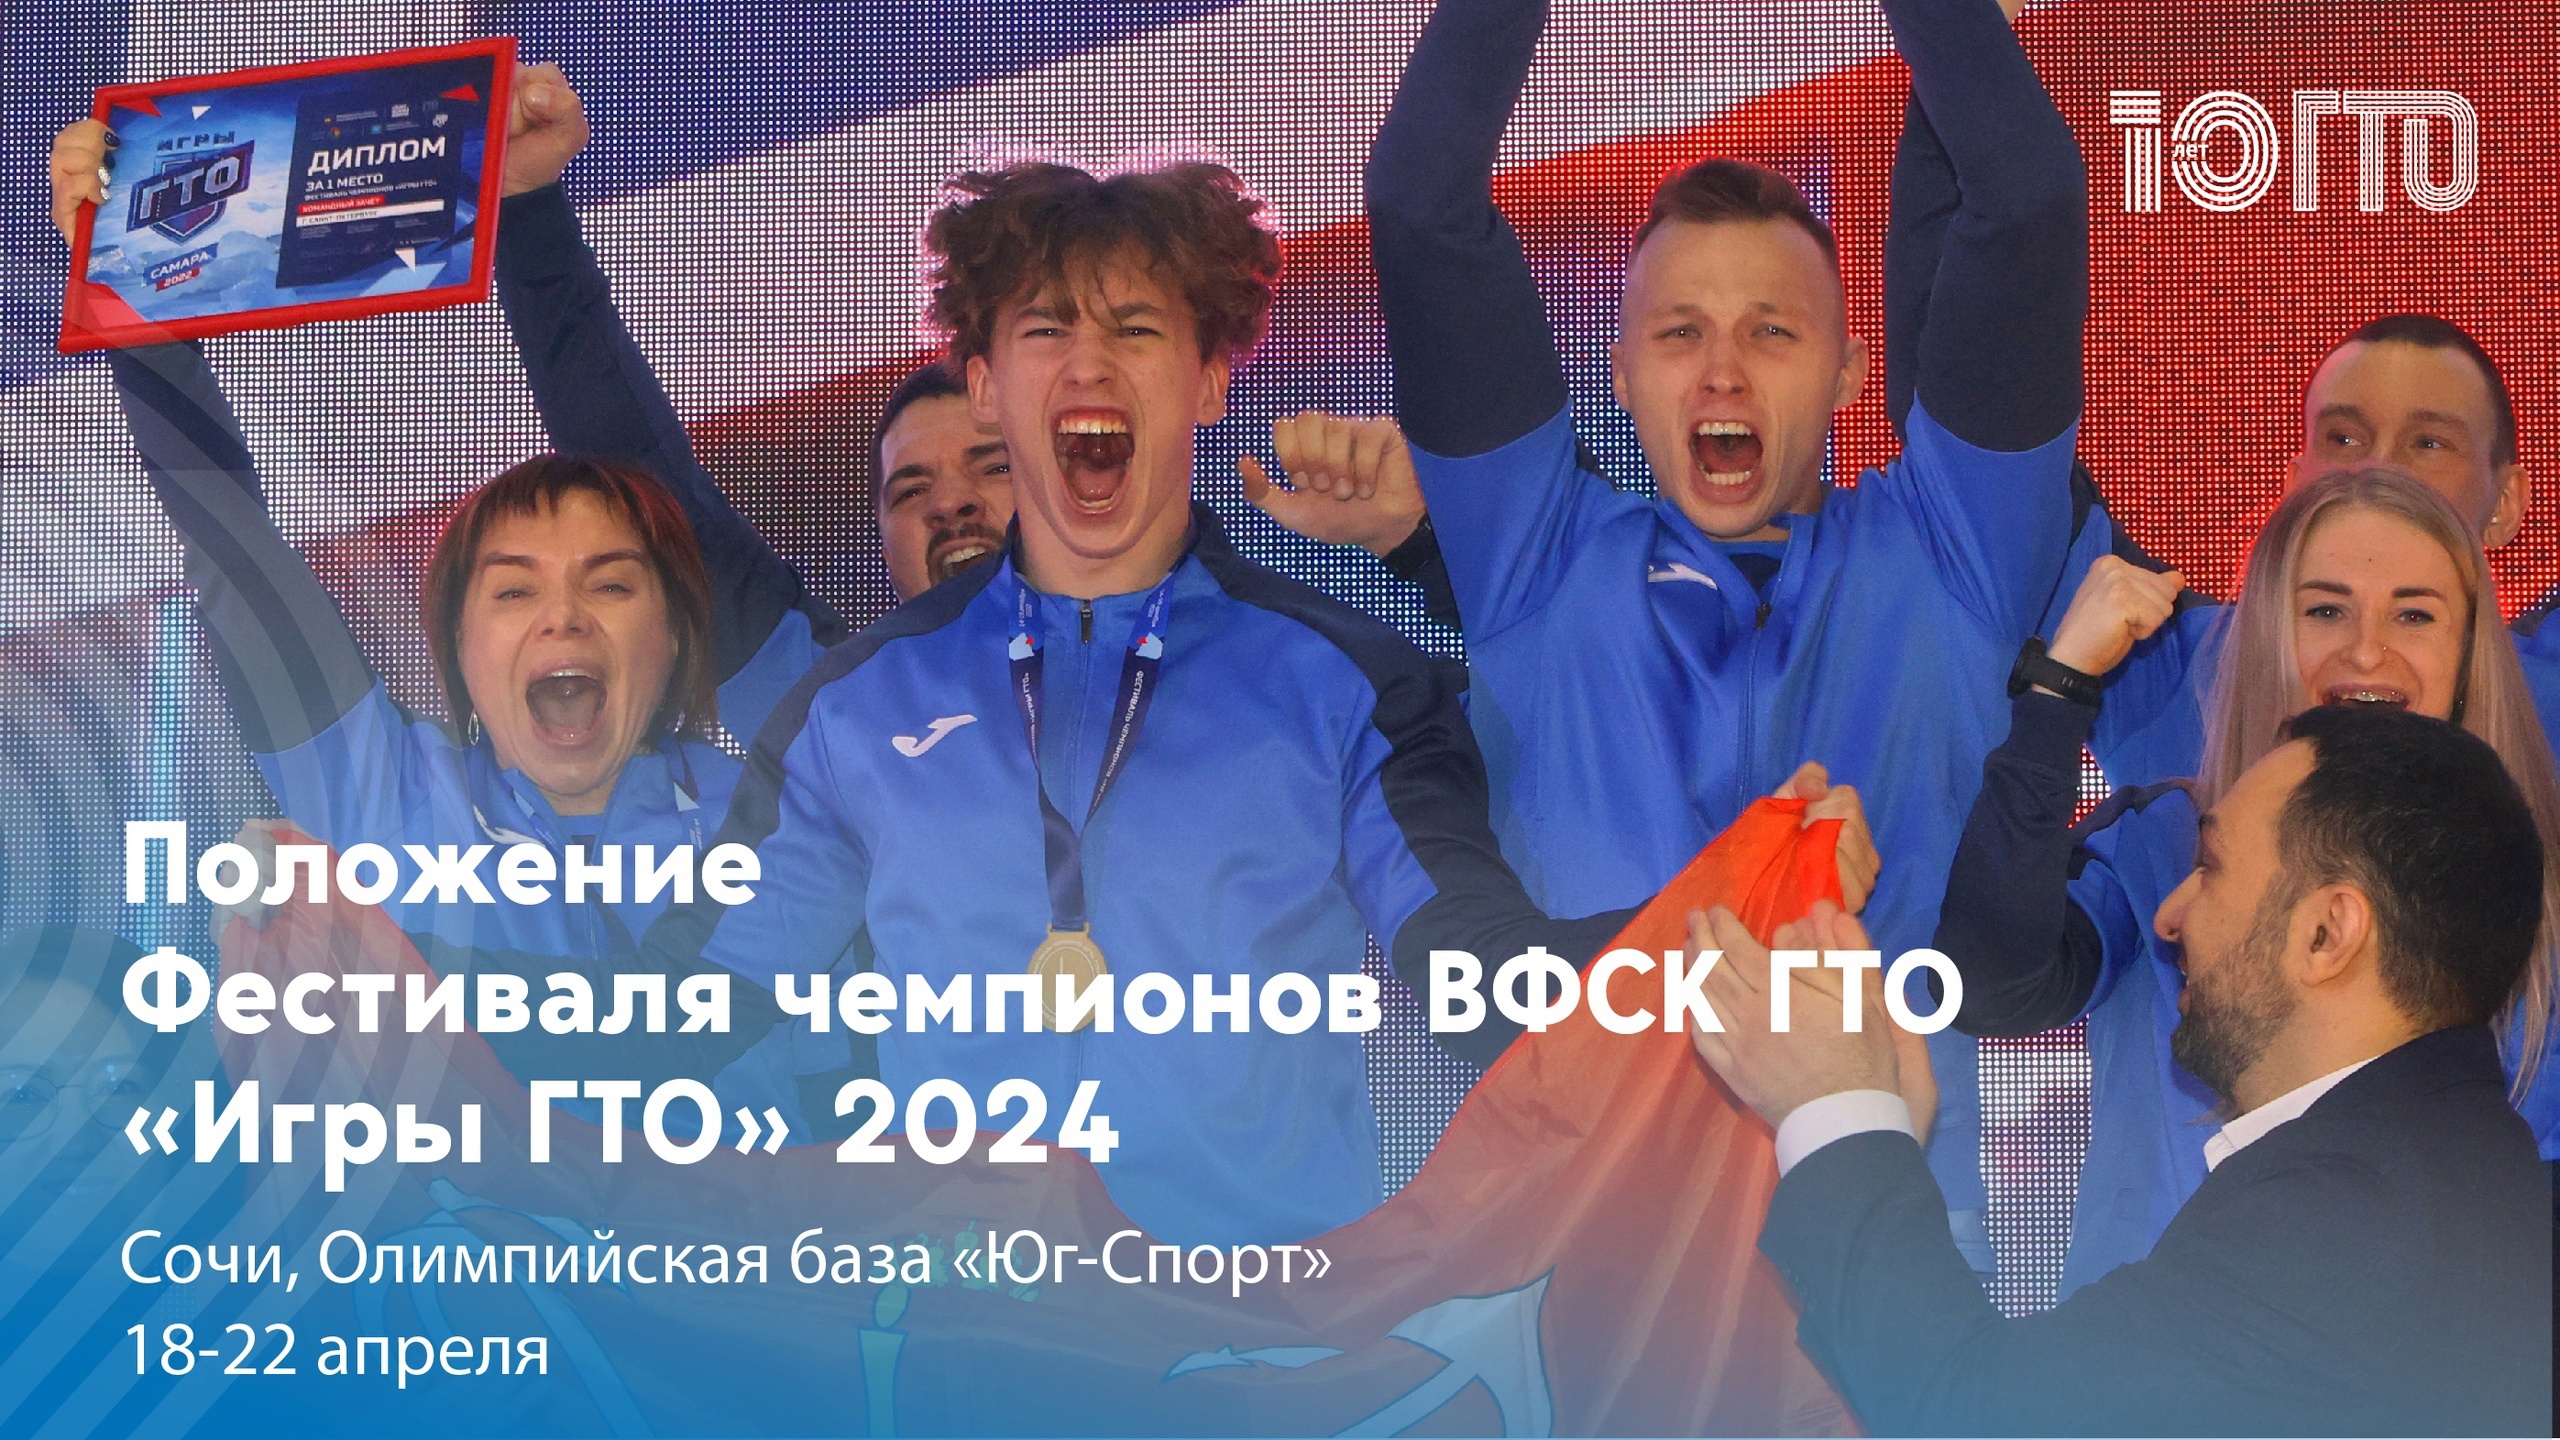 Фестиваль чемпионов «ИГРЫ ГТО 2024» будет проходить в Сочи с 18 по 22 апреля 2024 года.